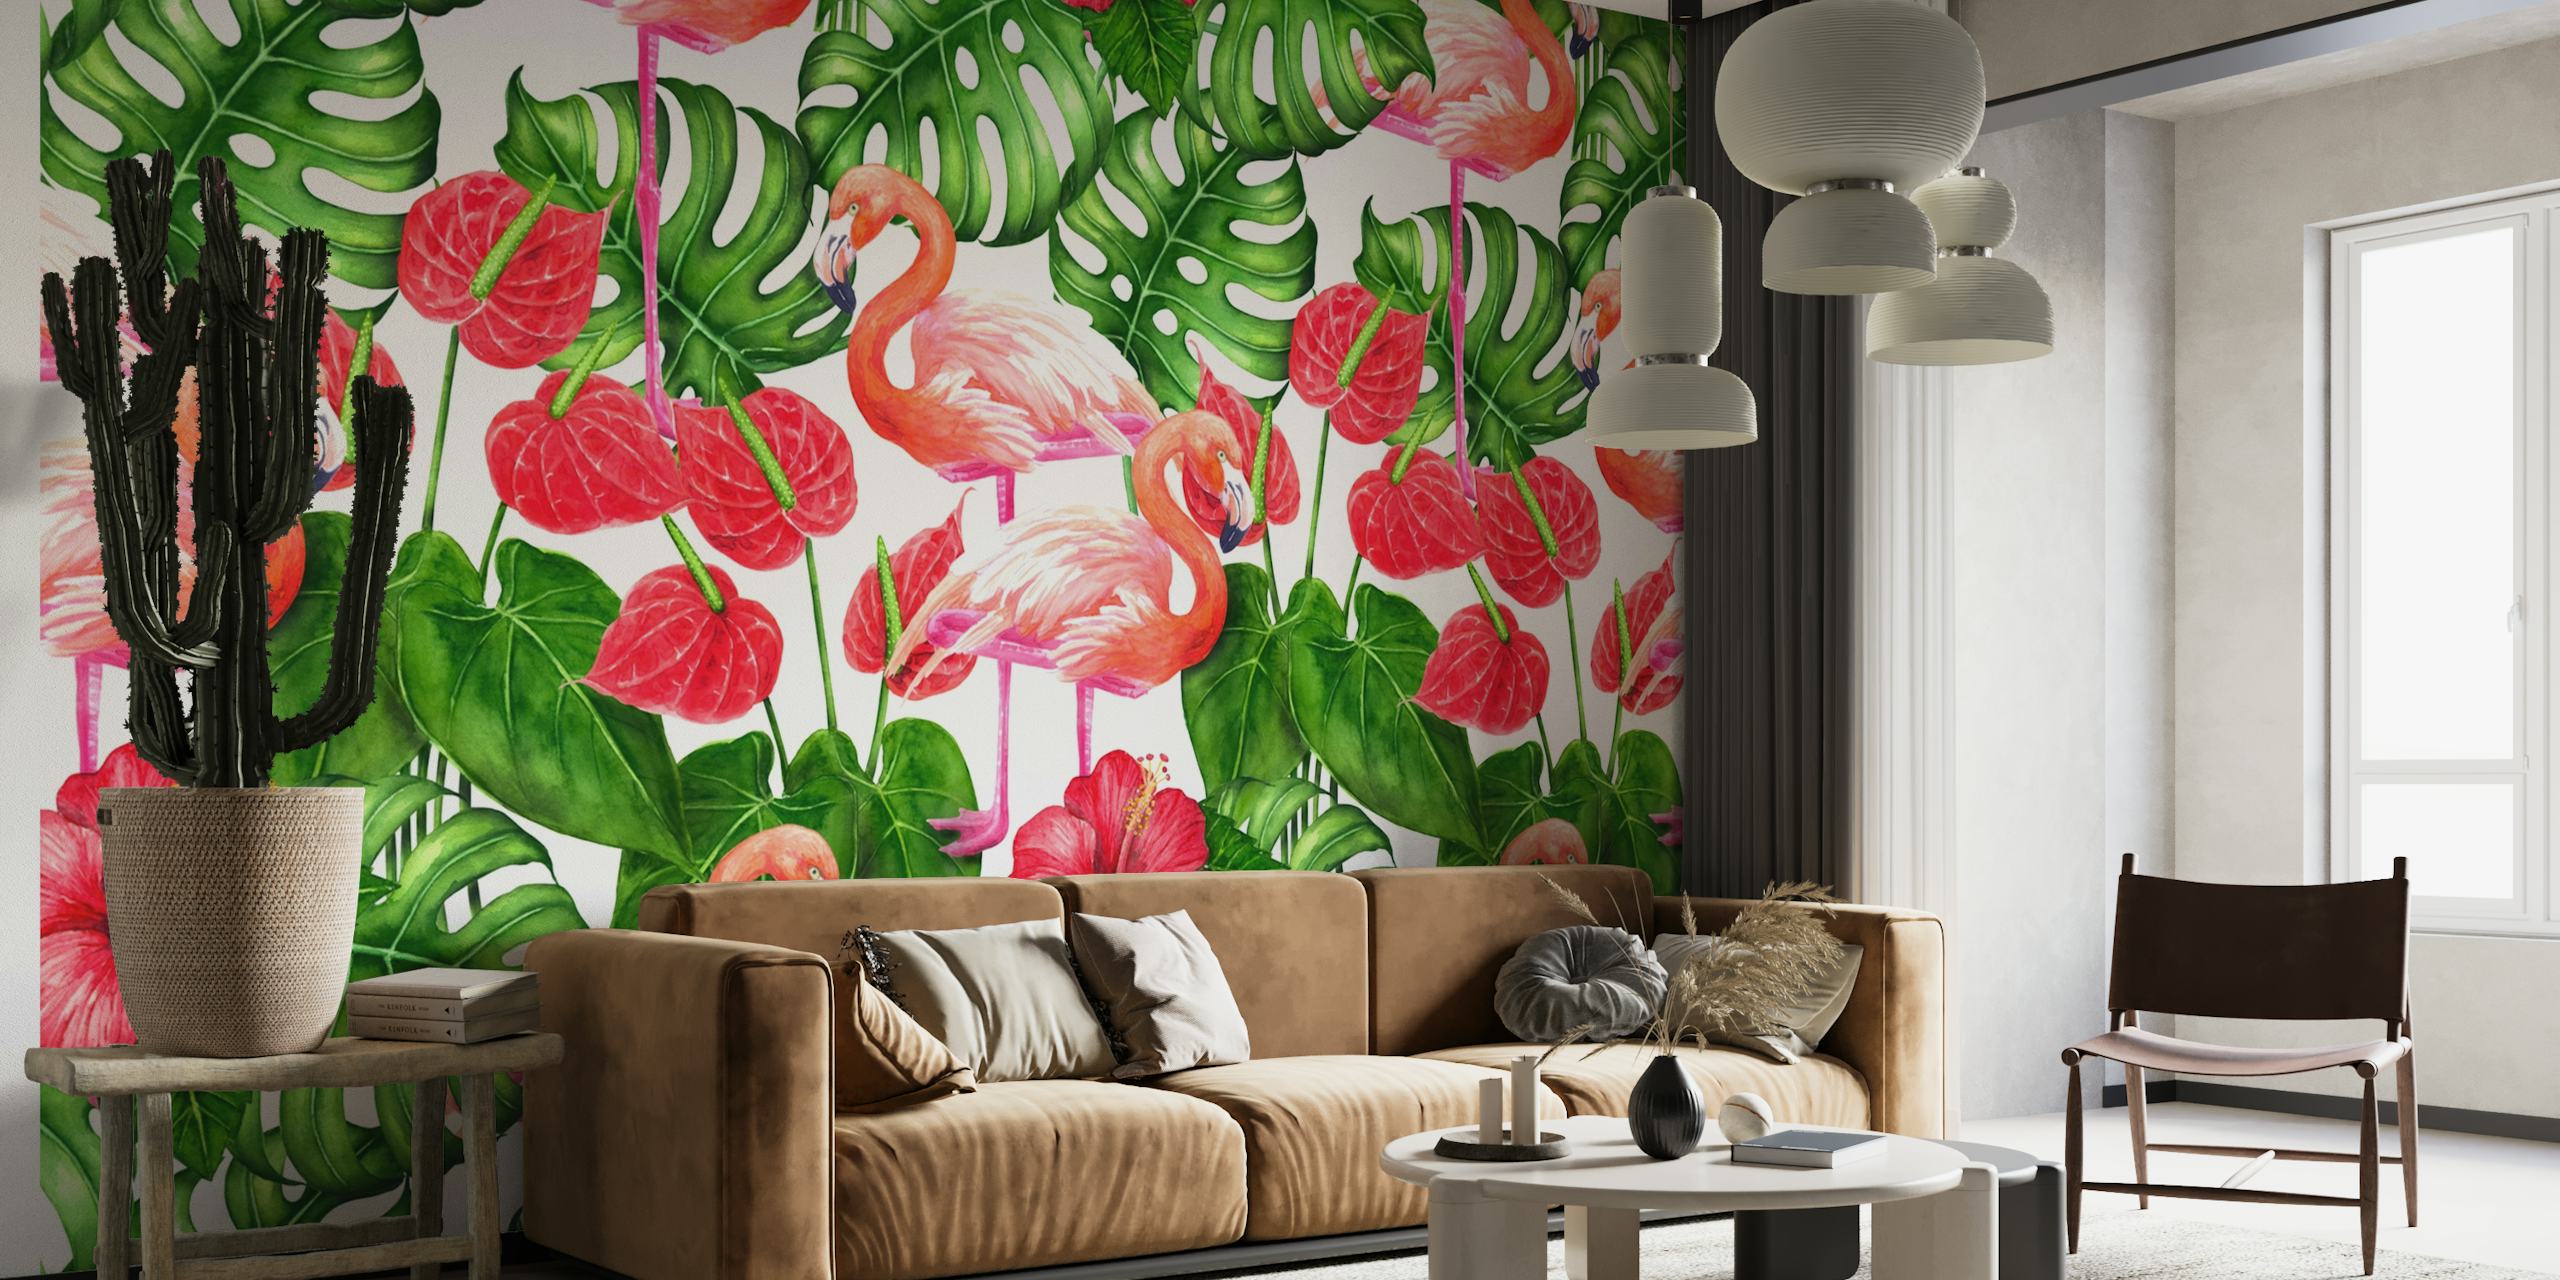 Flamingo and tropical garden 3 wallpaper